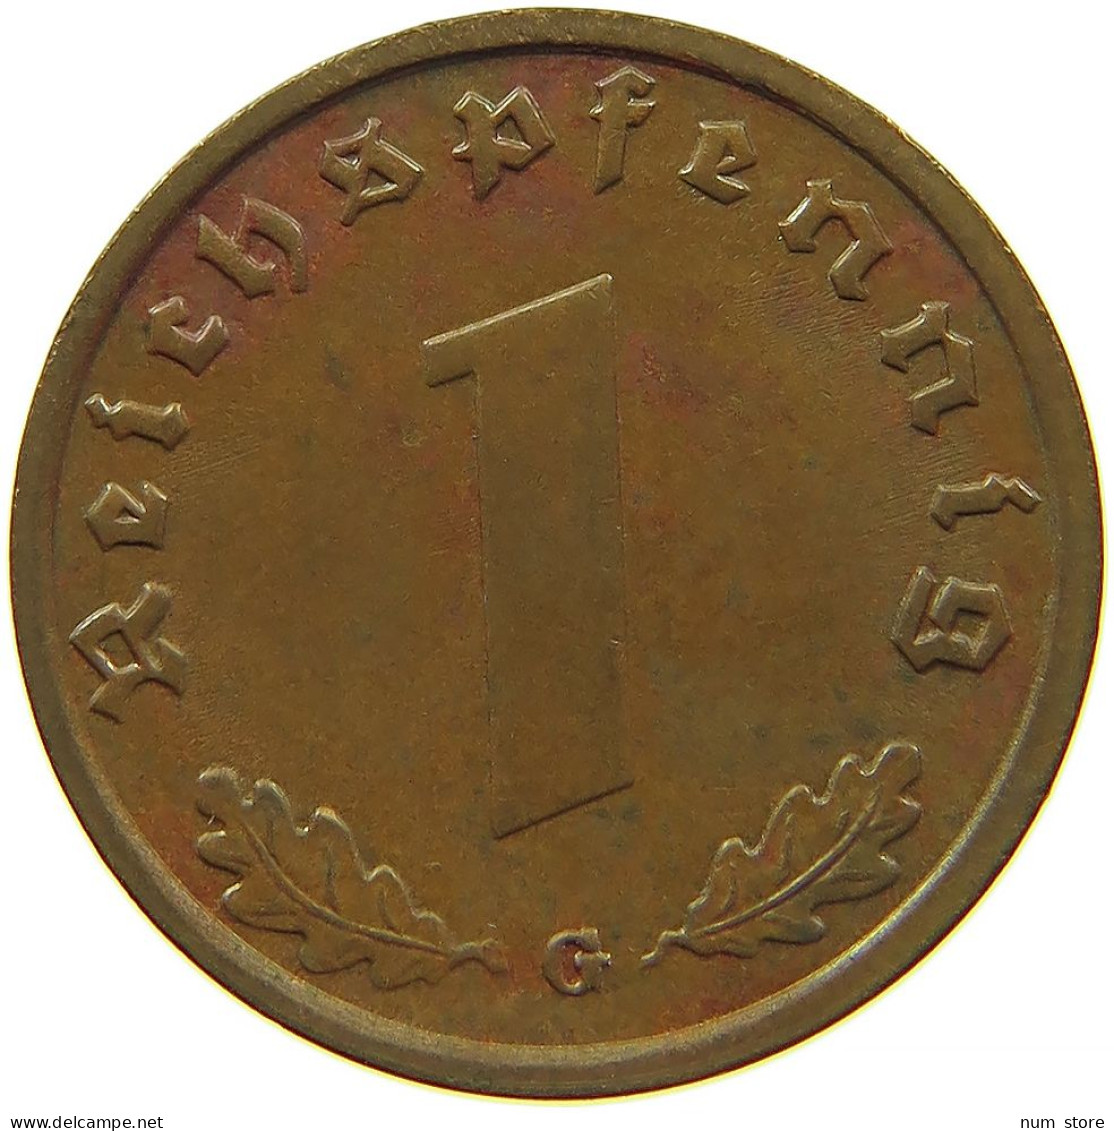 GERMANY 1 REICHSPFENNIG 1938 G #s083 0741 - 1 Reichspfennig